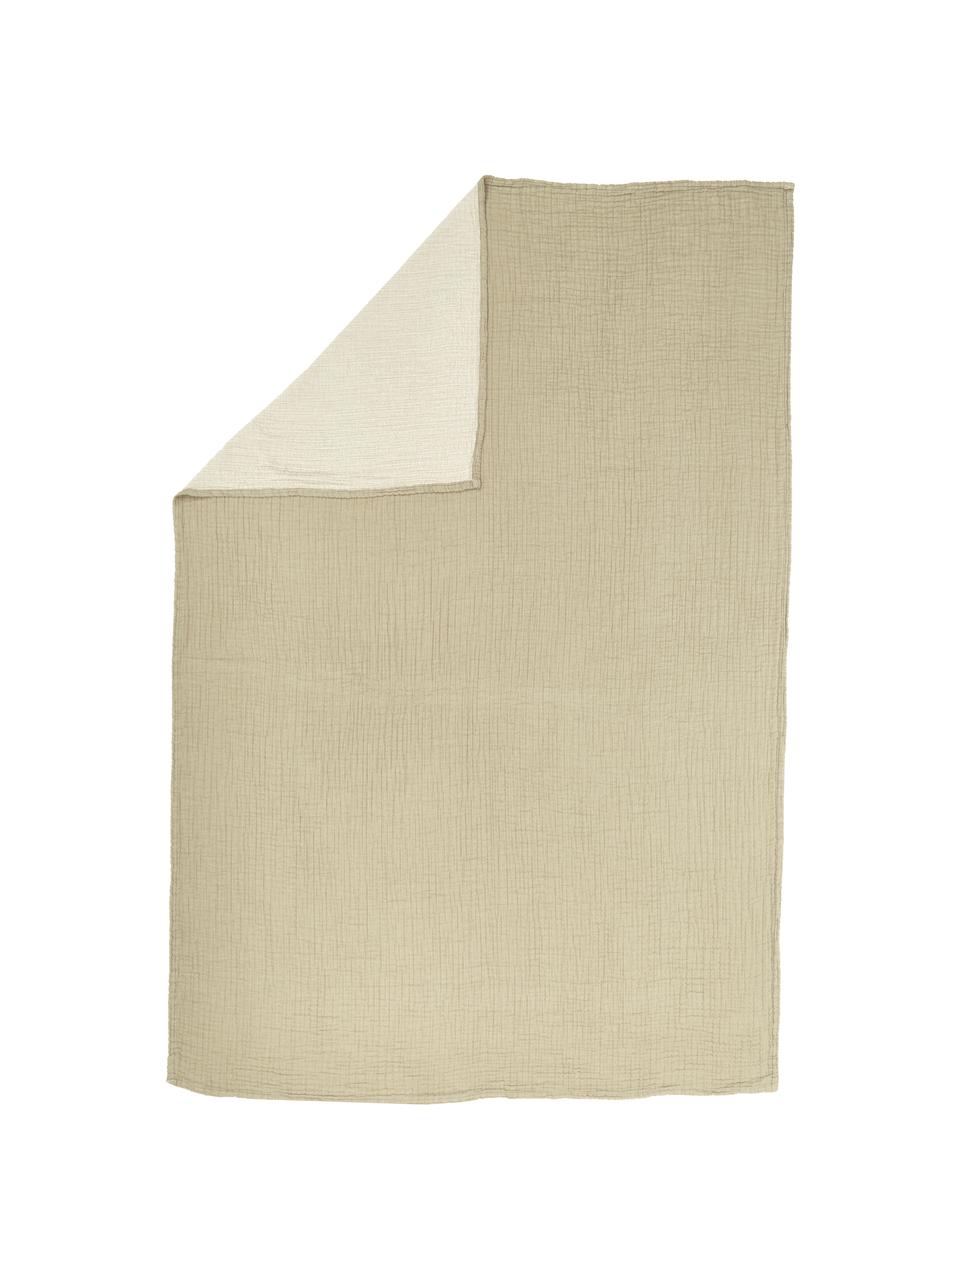 Couvre-lit mousseline de coton Liv, 100 % coton, Brun clair, beige, larg. 180 x long. 260 cm (pour lits jusqu'à 140 x 200 cm)